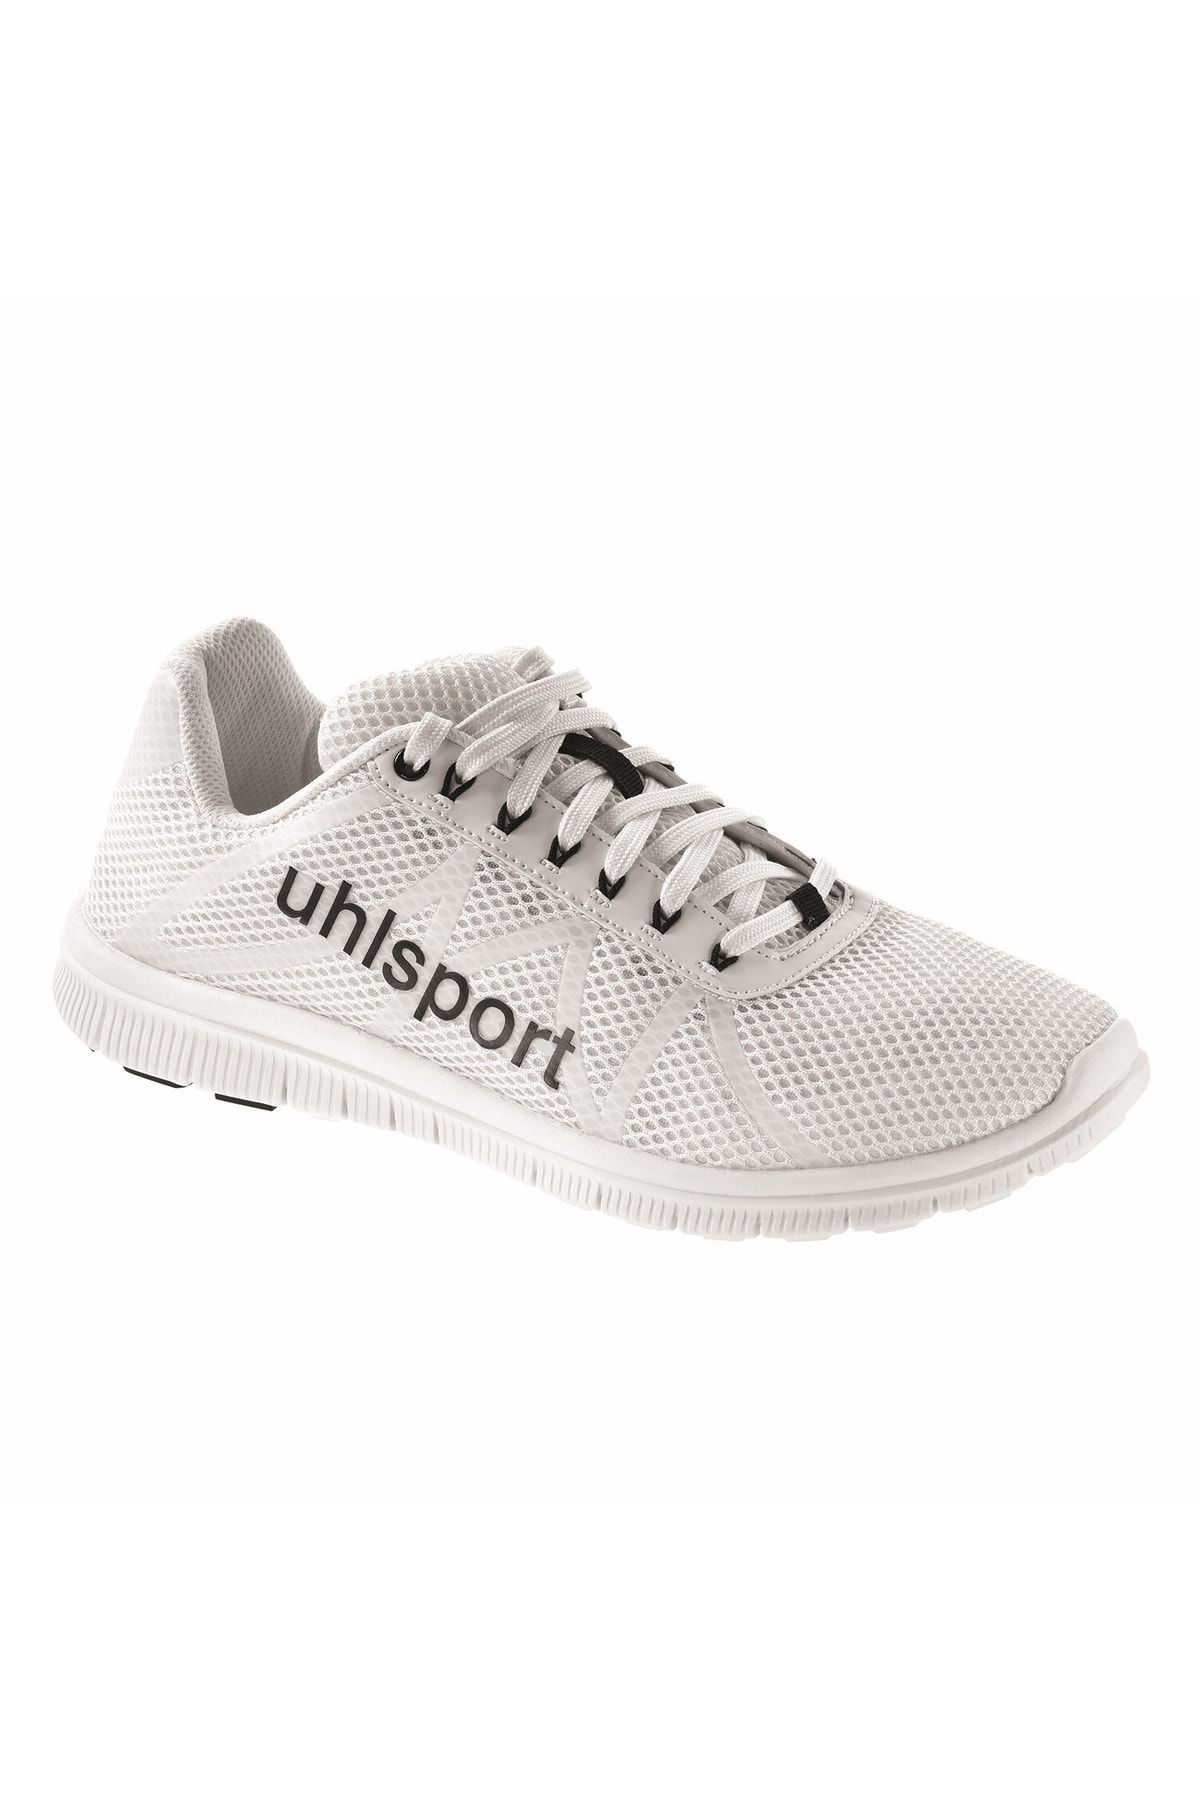 uhlsport Float Run ٪ کفش پیاده روی 100840902